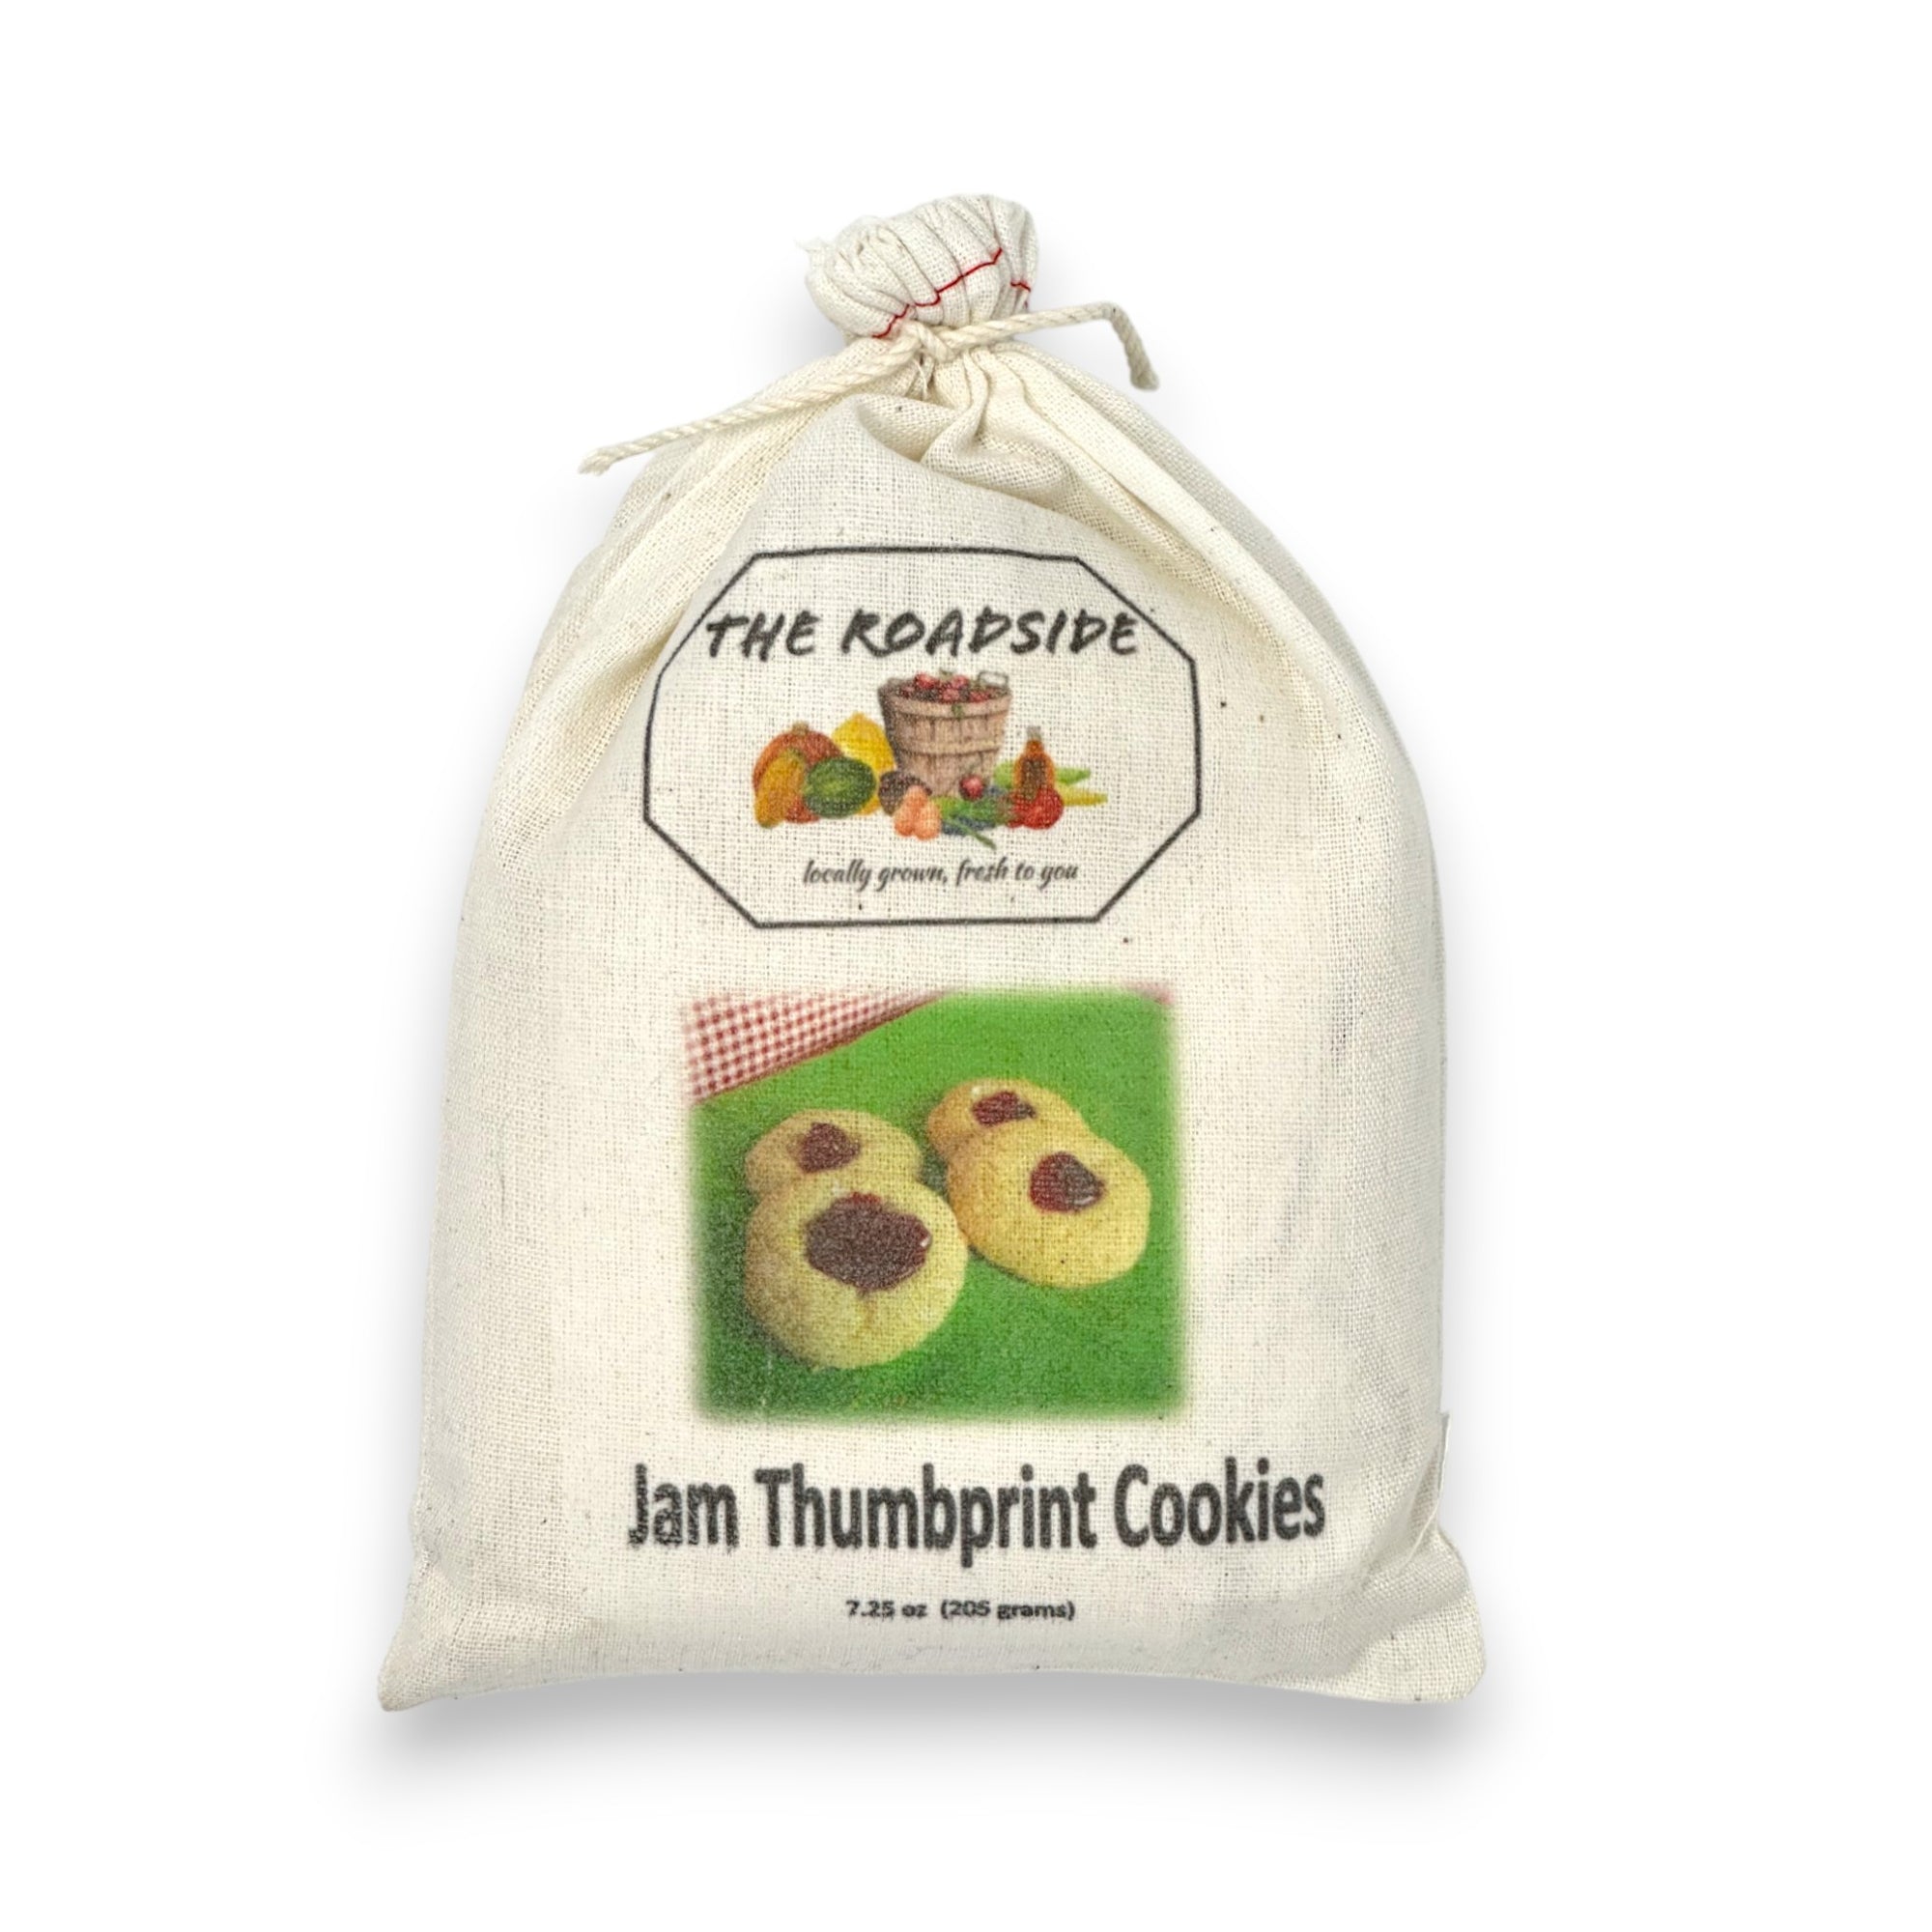 Jam Thumbprint Cookie Mix.